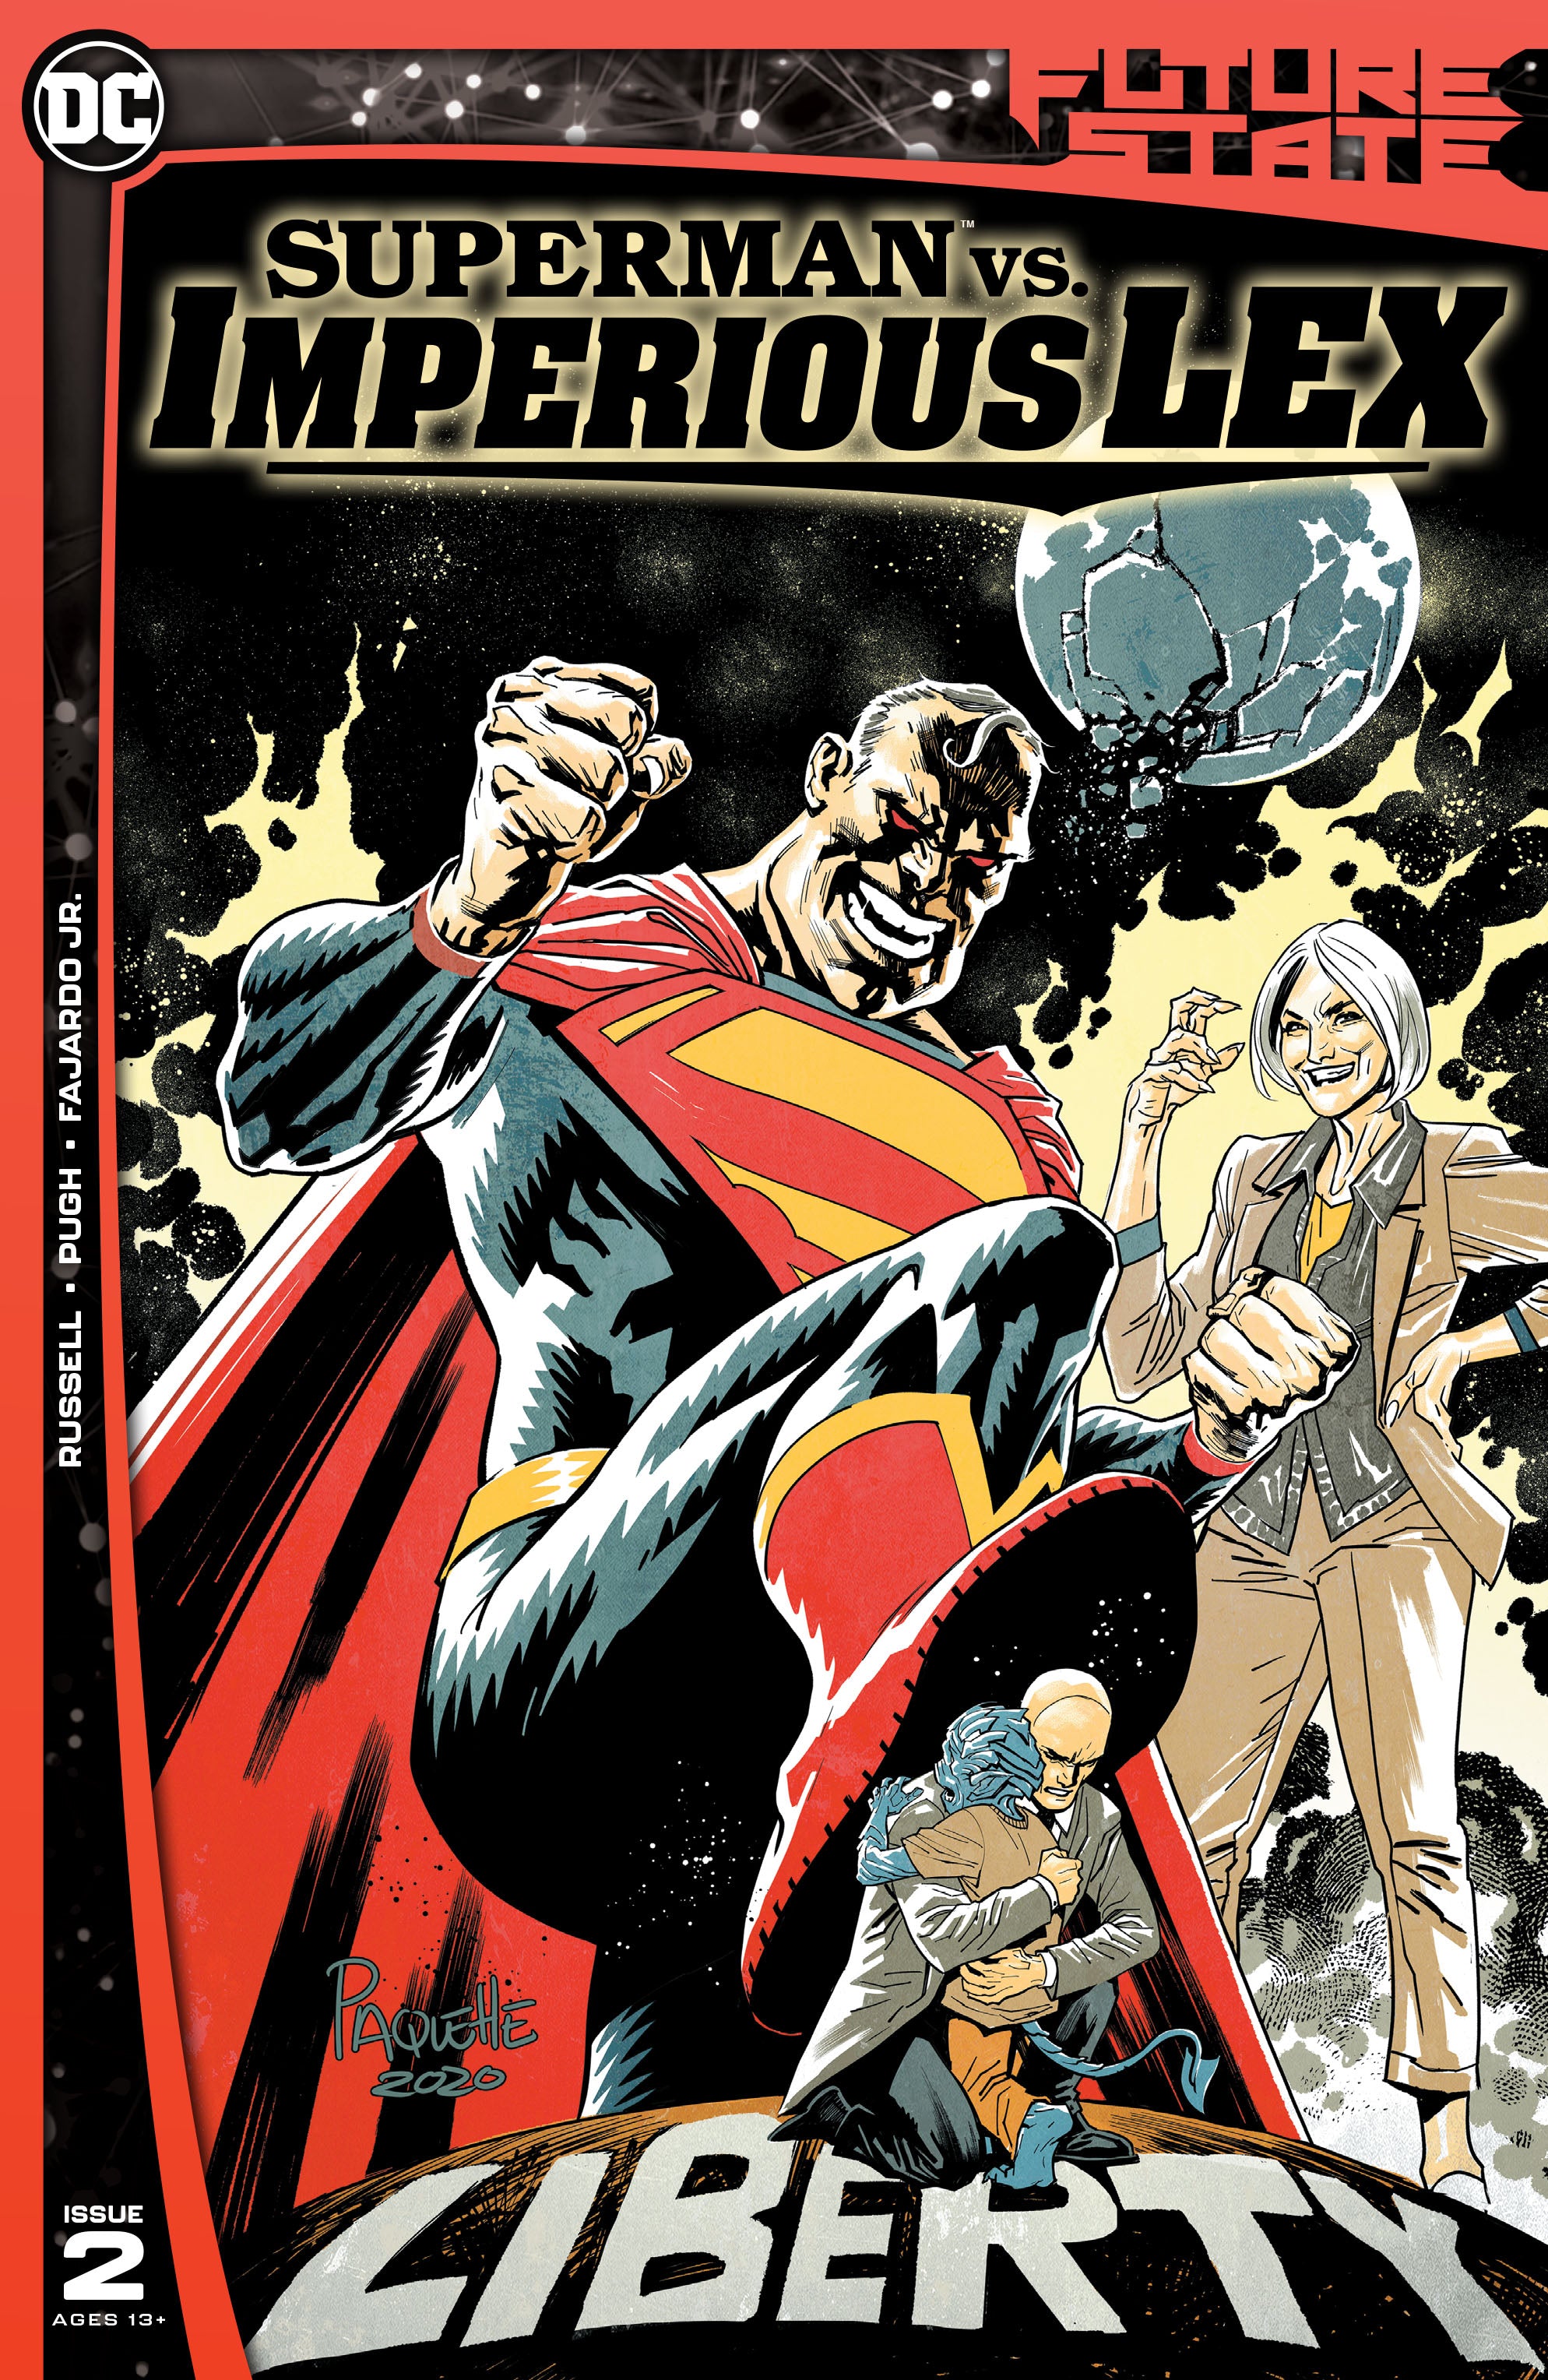 FUTURE STATE SUPERMAN VS IMPERIOUS LEX #2 (OF 3) CVR A YANIC